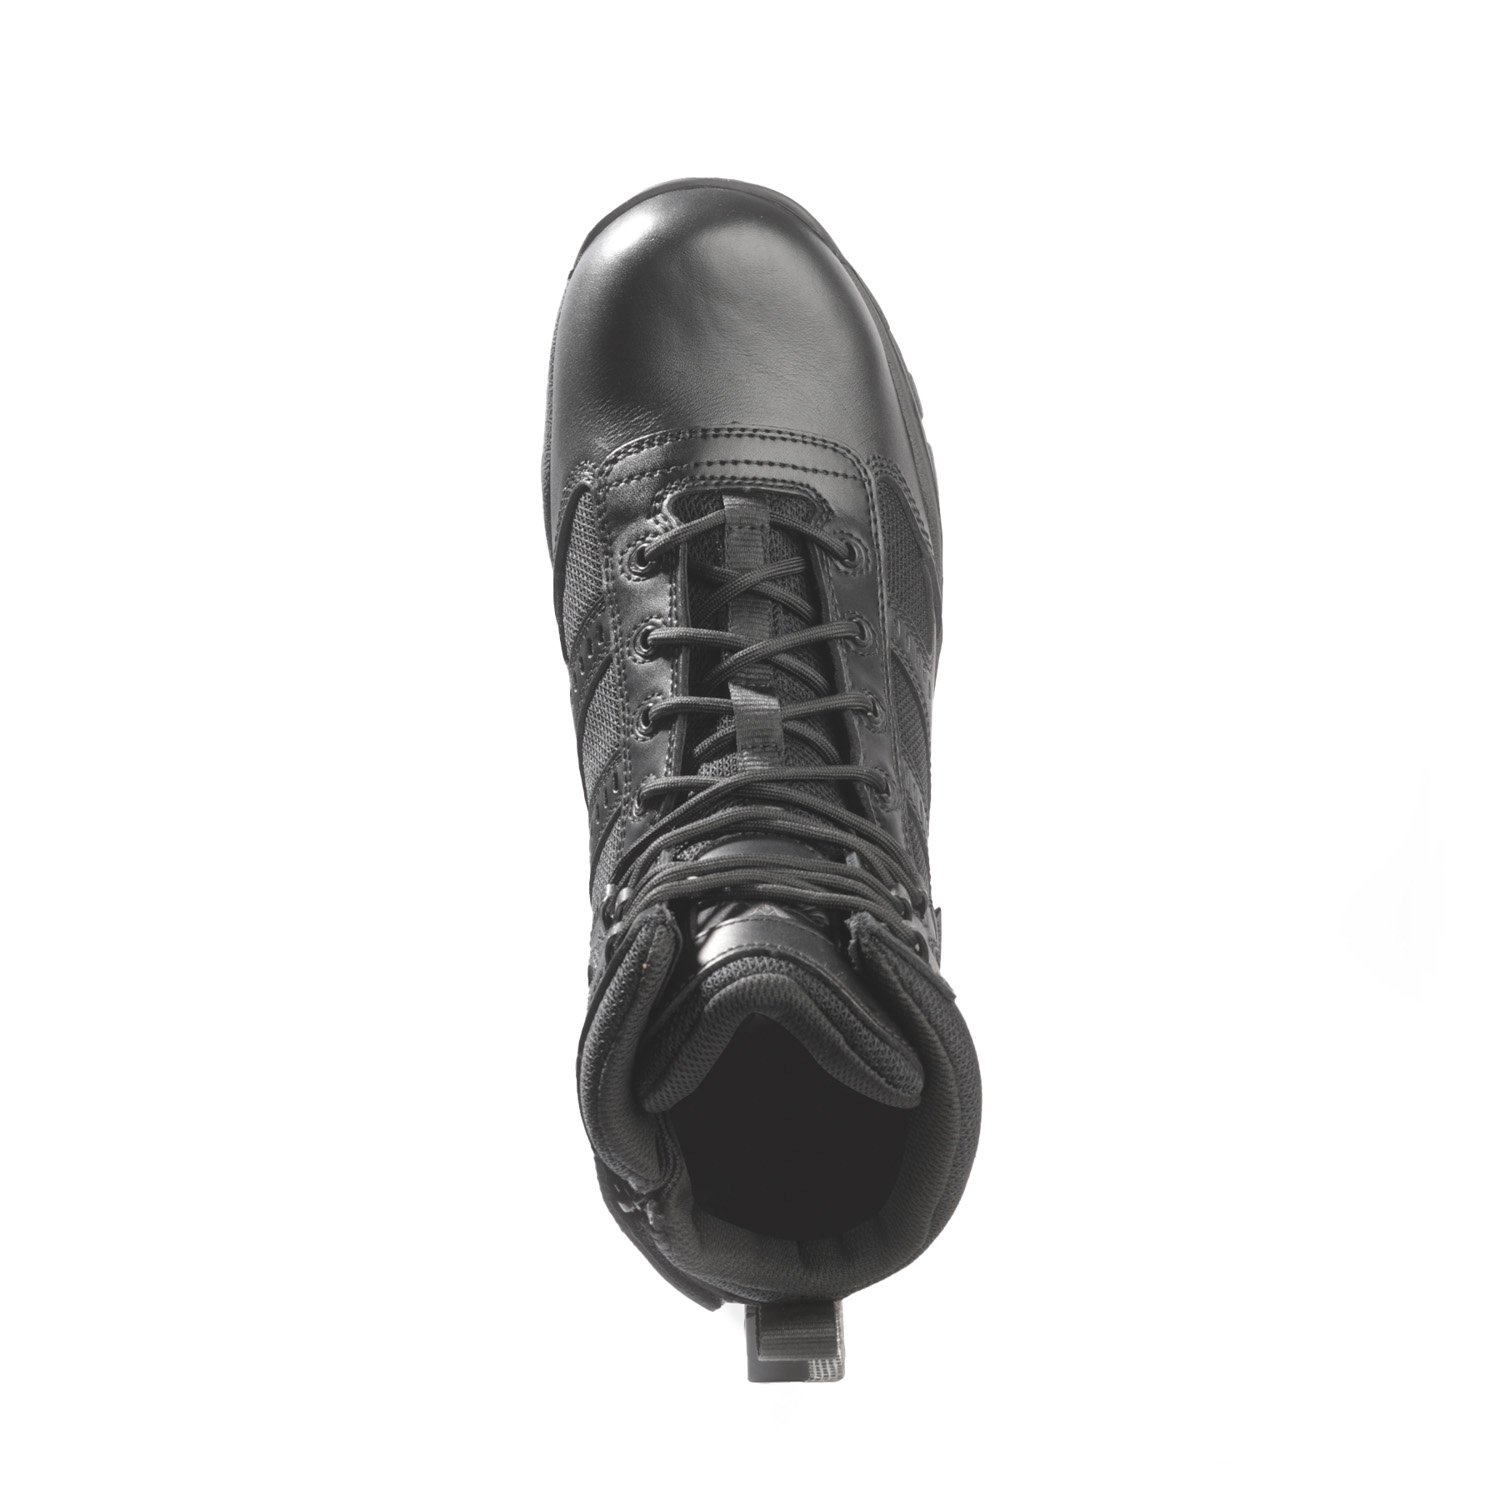 Thorogood Deuce 6 Waterproof Side-Zip Composite Safety Toe